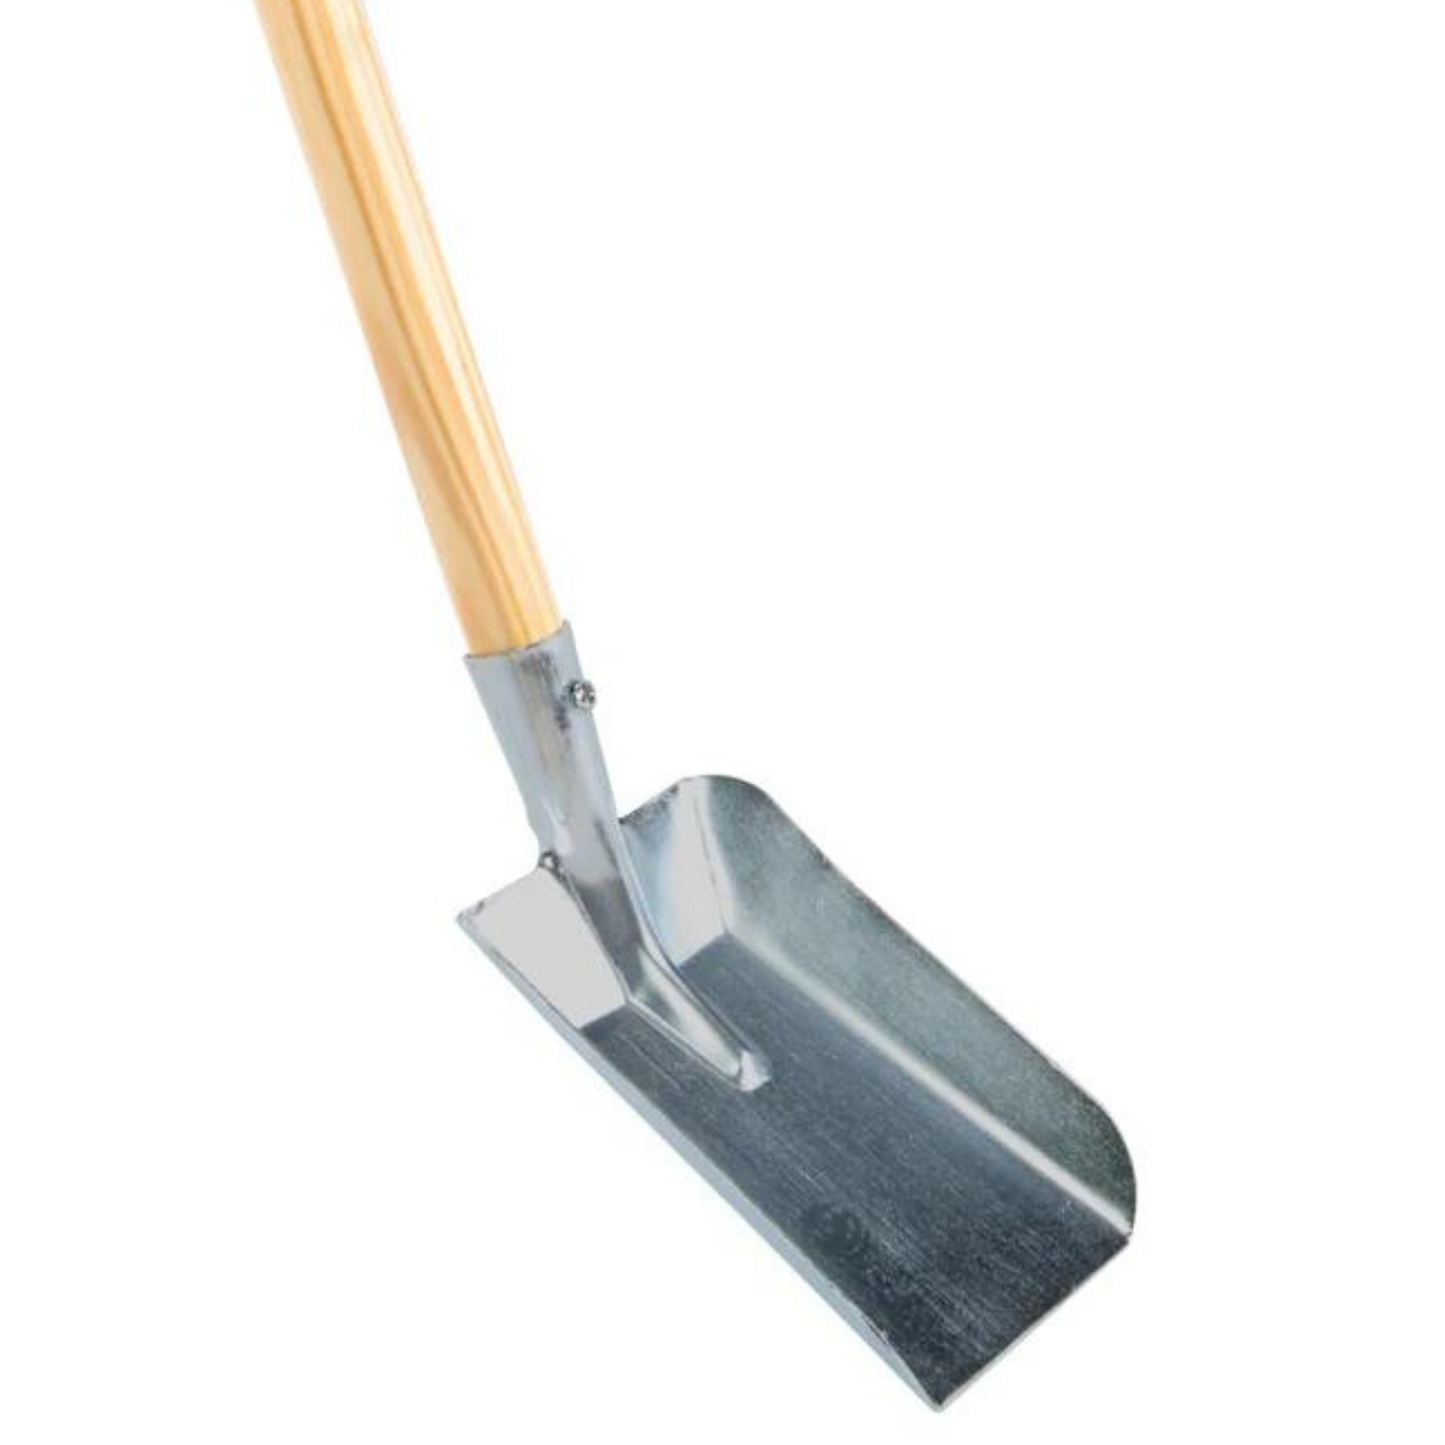 Children's shovel